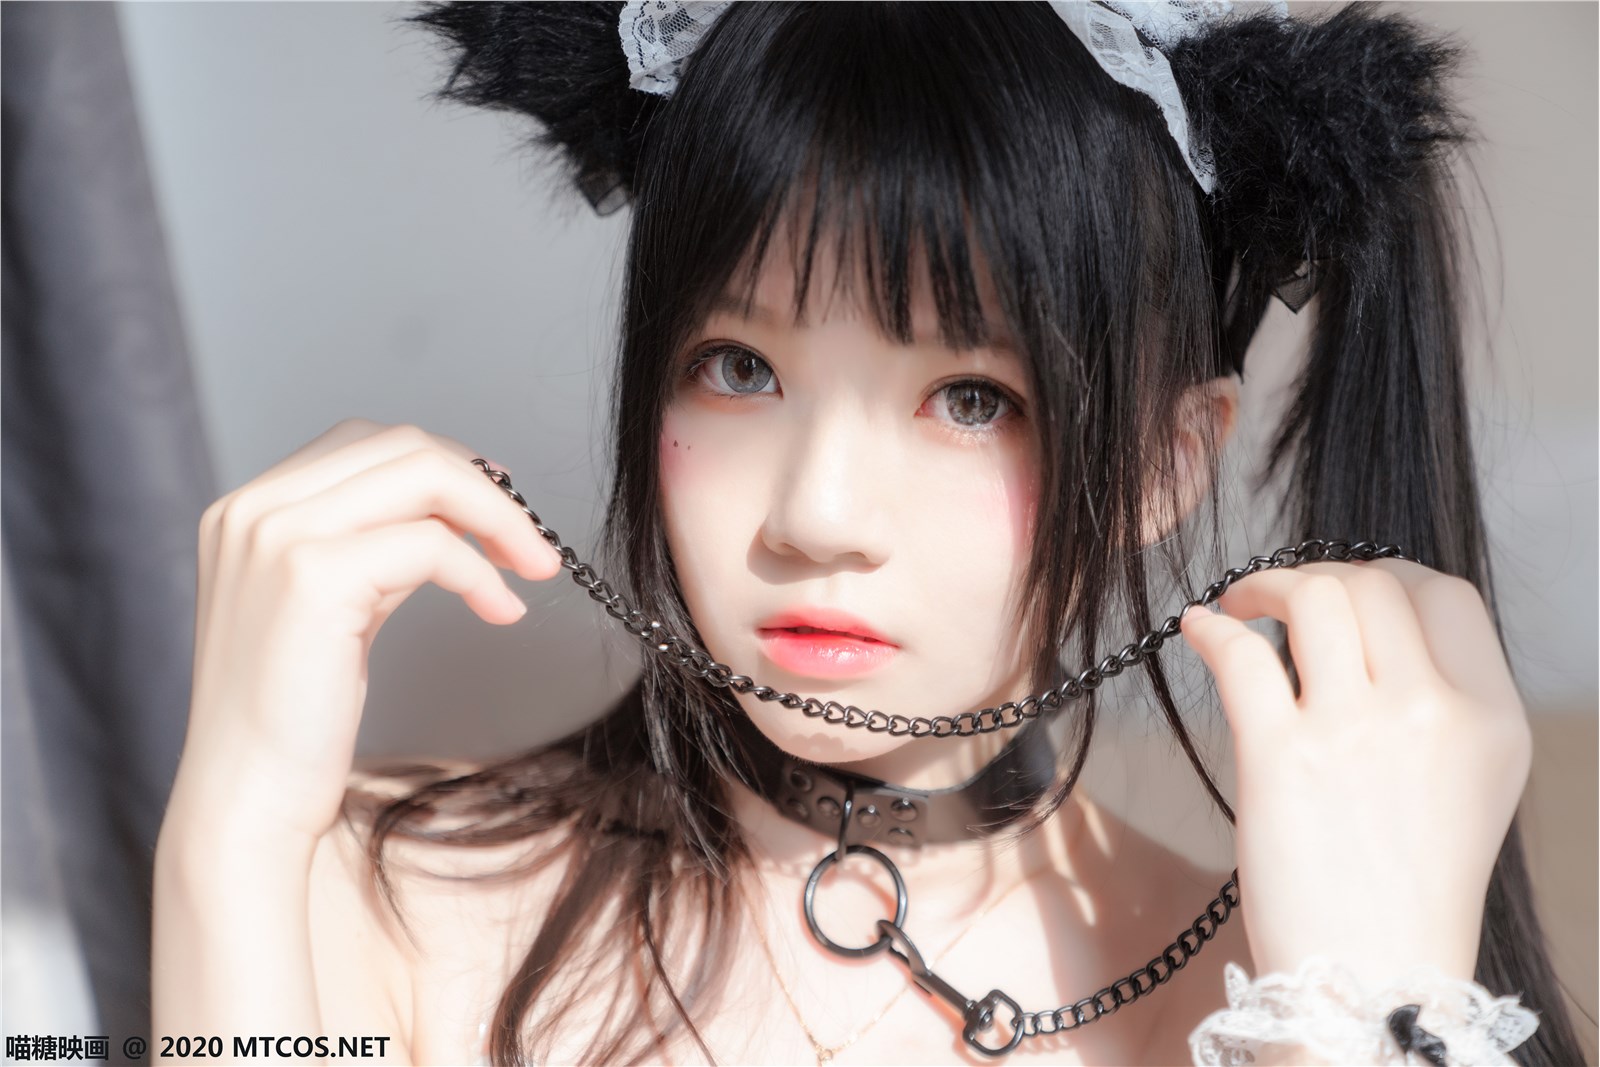 The black cat maid(15)